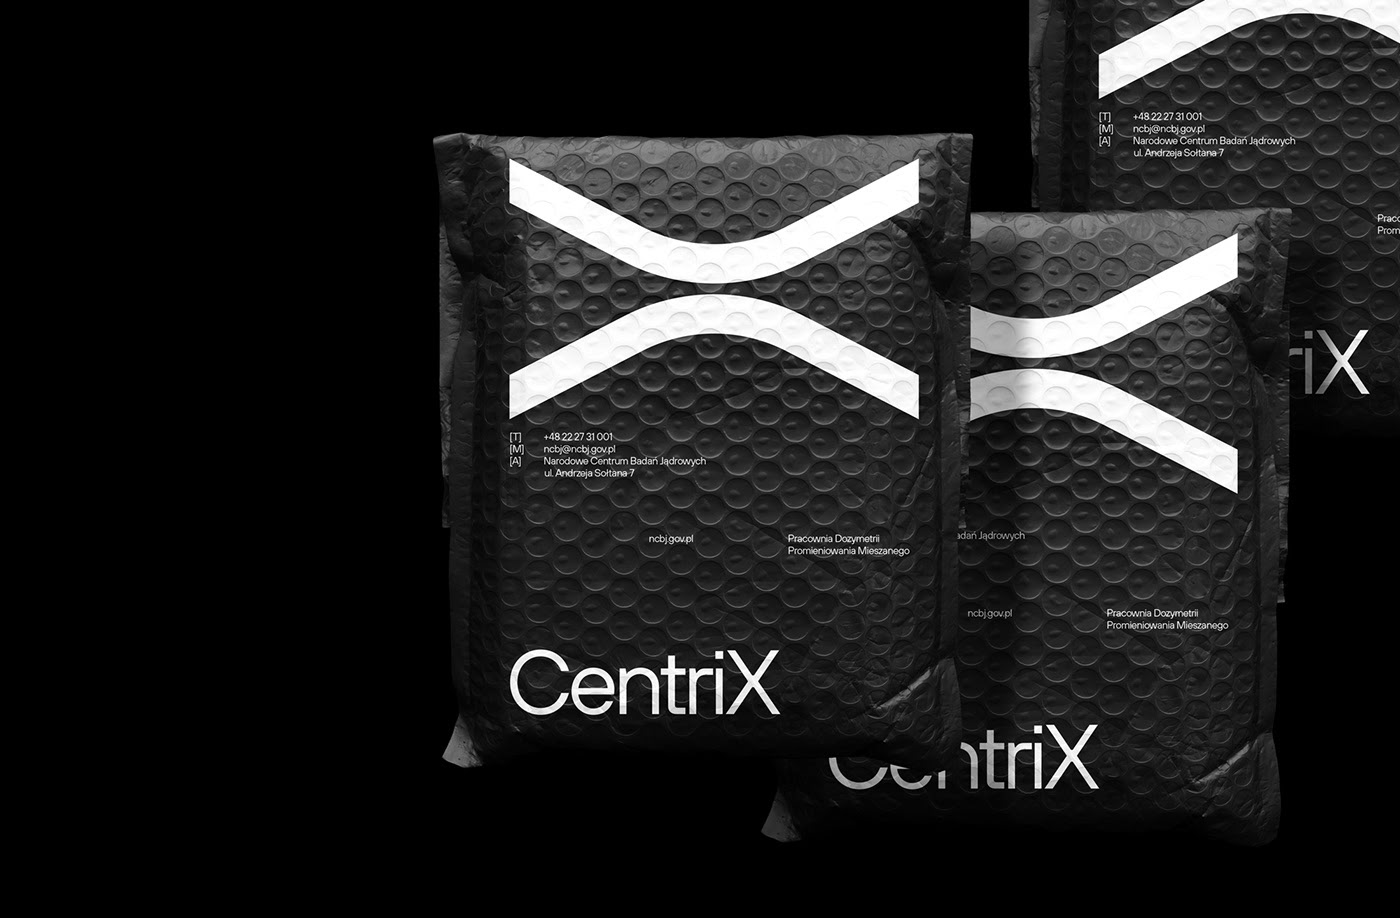 CentriX品牌形象设计